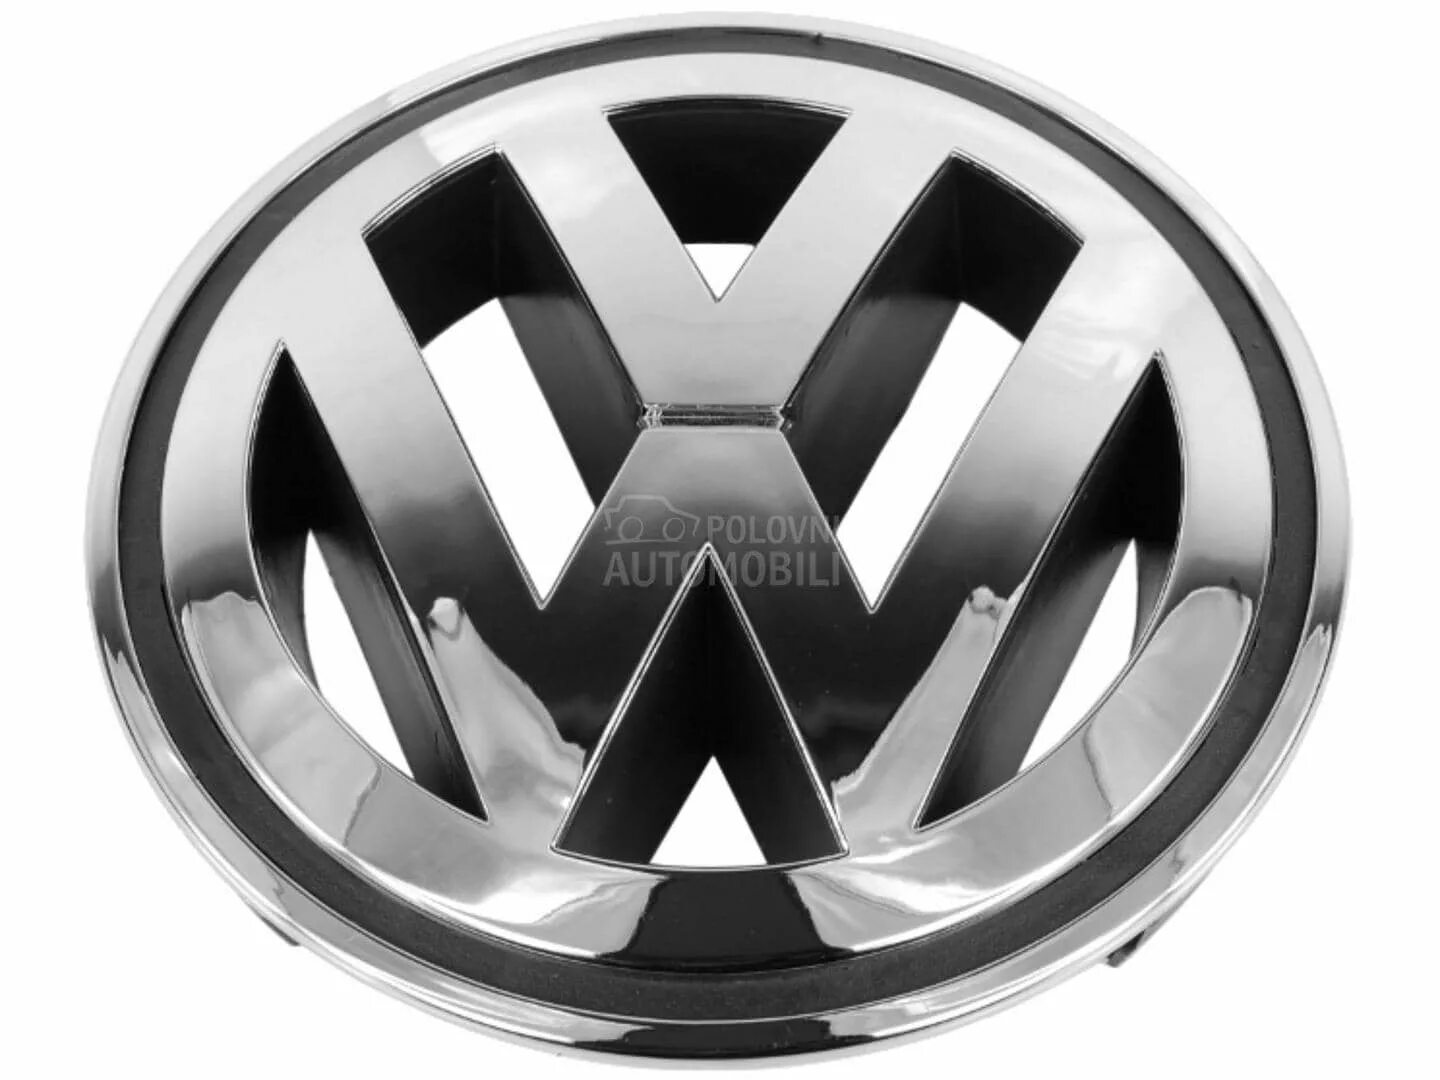 Значки пассат б6. Эмблема Фольксваген Пассат б6. Значок VW Passat b4. Passat b5 Volkswagen logo. Эмблема VW Passat b6 большая.